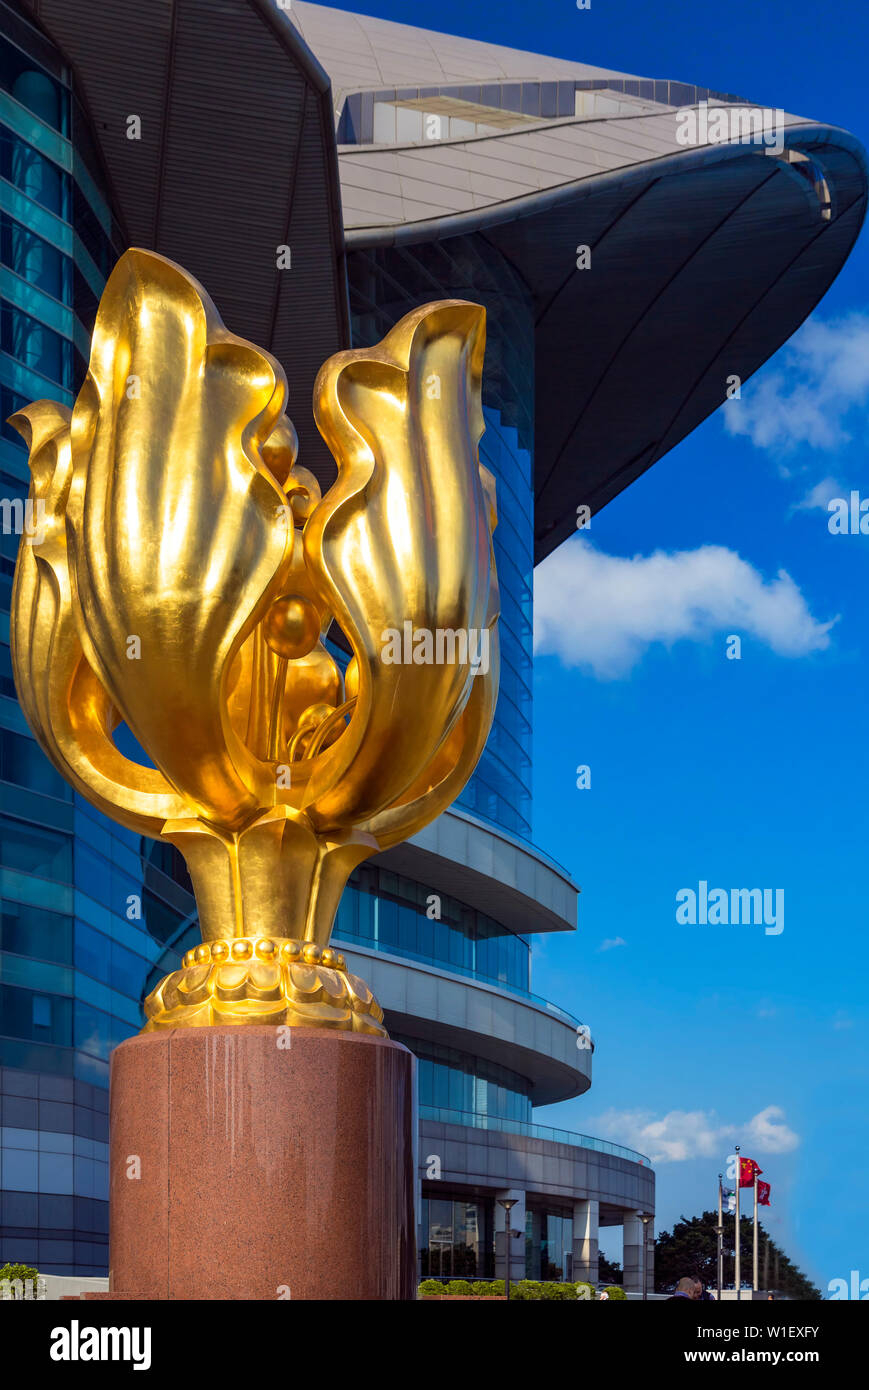 Golden Bauhinia sculpture, Hong Kong, SAR, China Stock Photo